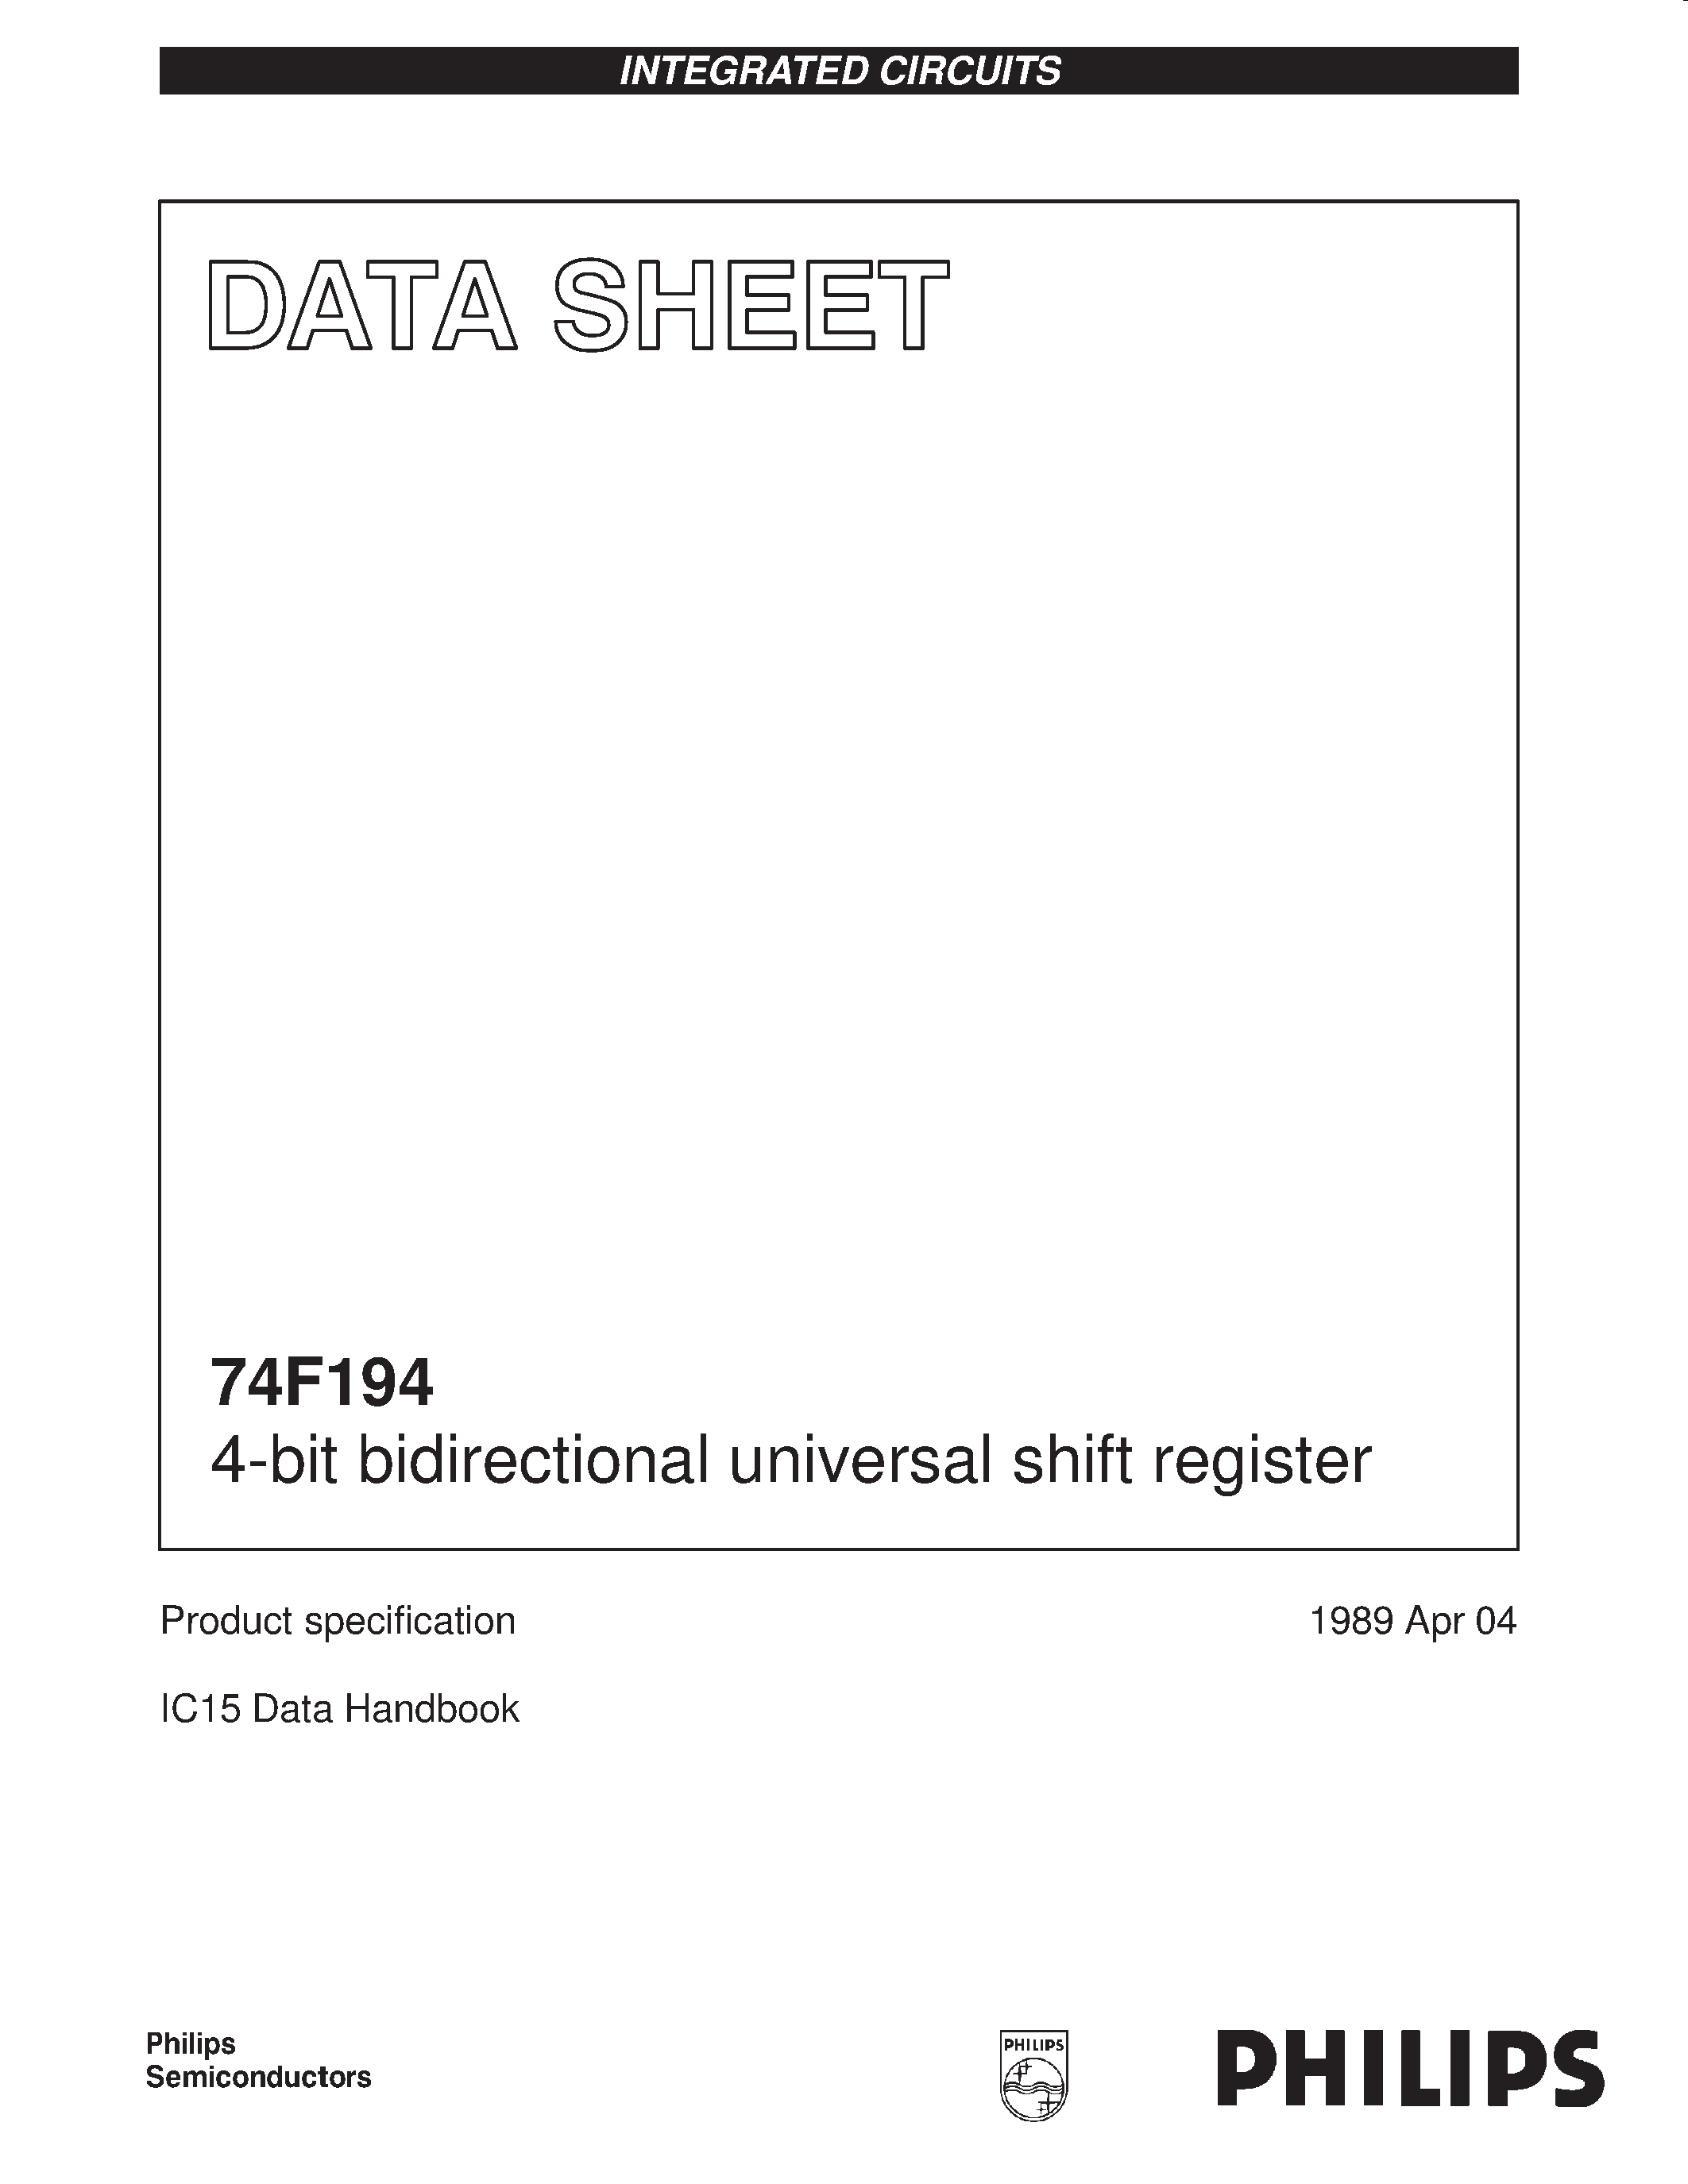 Даташит 74F194 - 4-bit bidirectional universal shift register страница 1